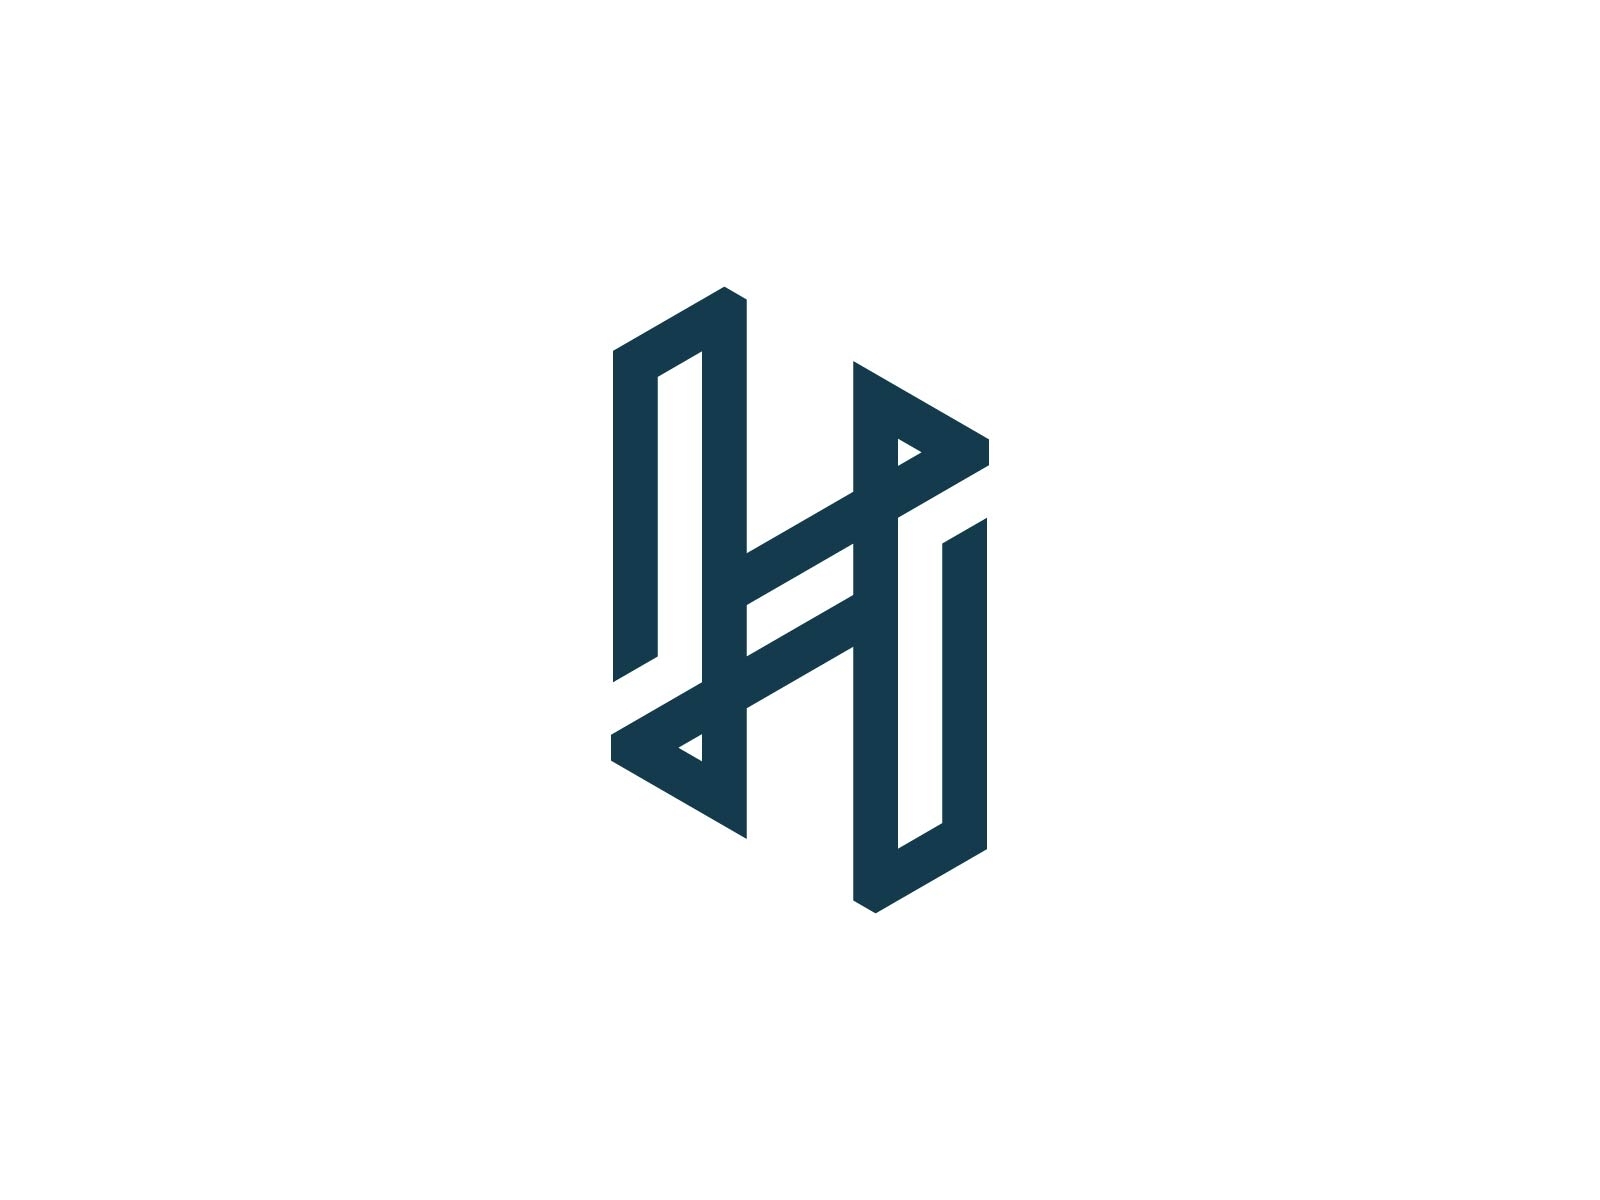 Premium Letter H Logo by Brand Semut on Dribbble